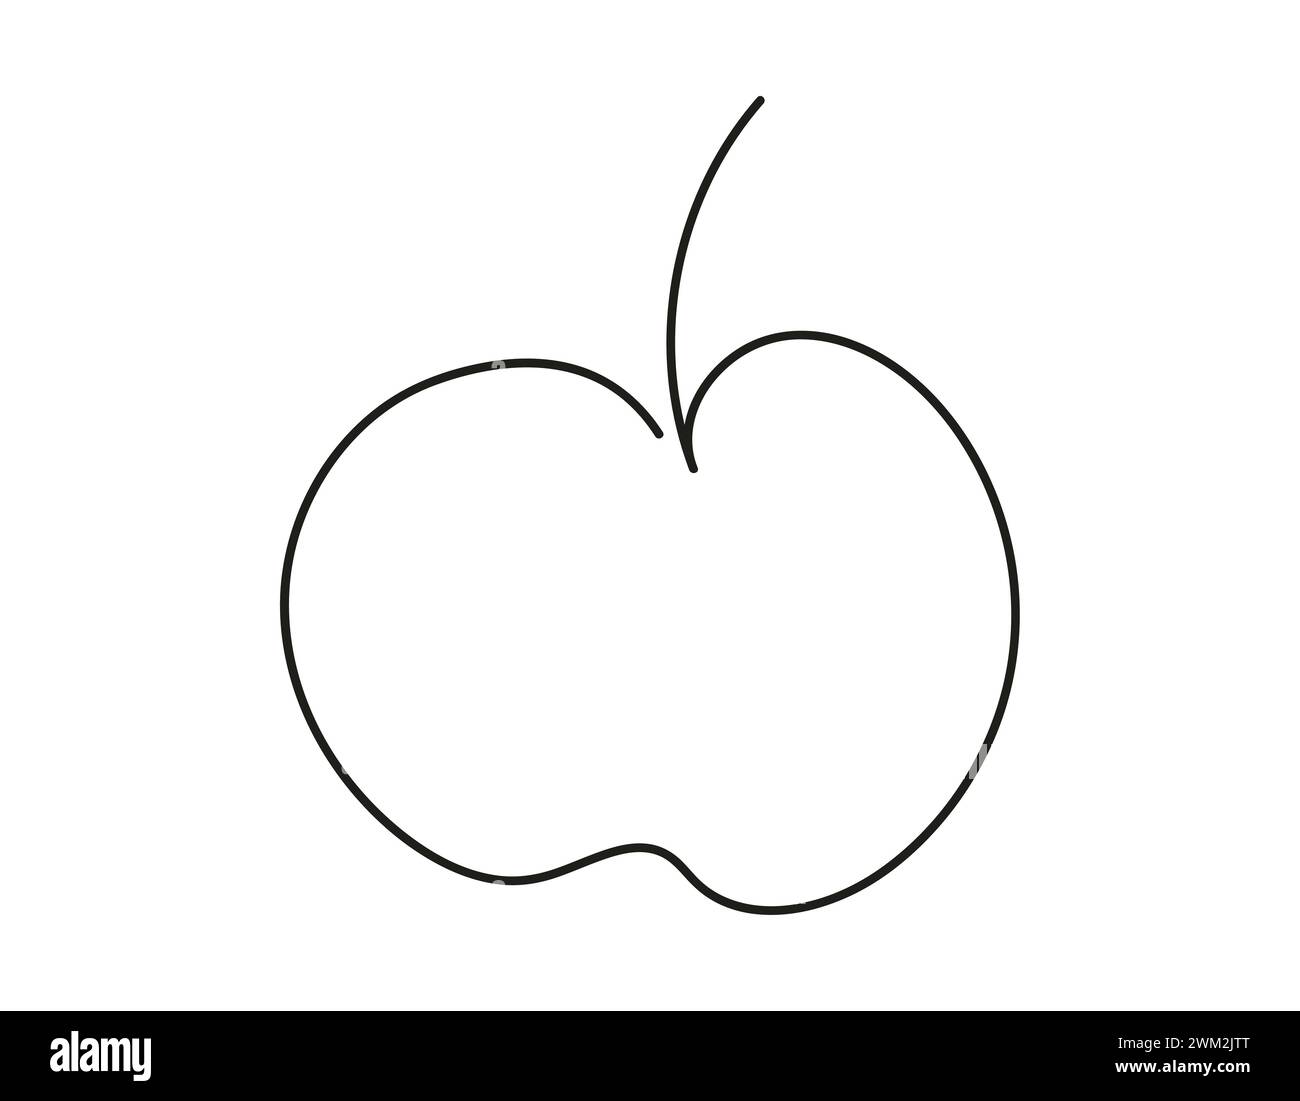 Durchgehende, einzeilige Zeichnung eines Apfels. Ganze Früchte. Gesundes Dessert. Strichgrafik. Isoliert auf weißem Hintergrund. Designelement für Druck, Gruß, Postkarte, Scrapbooking, Malbuch. Stock Vektor